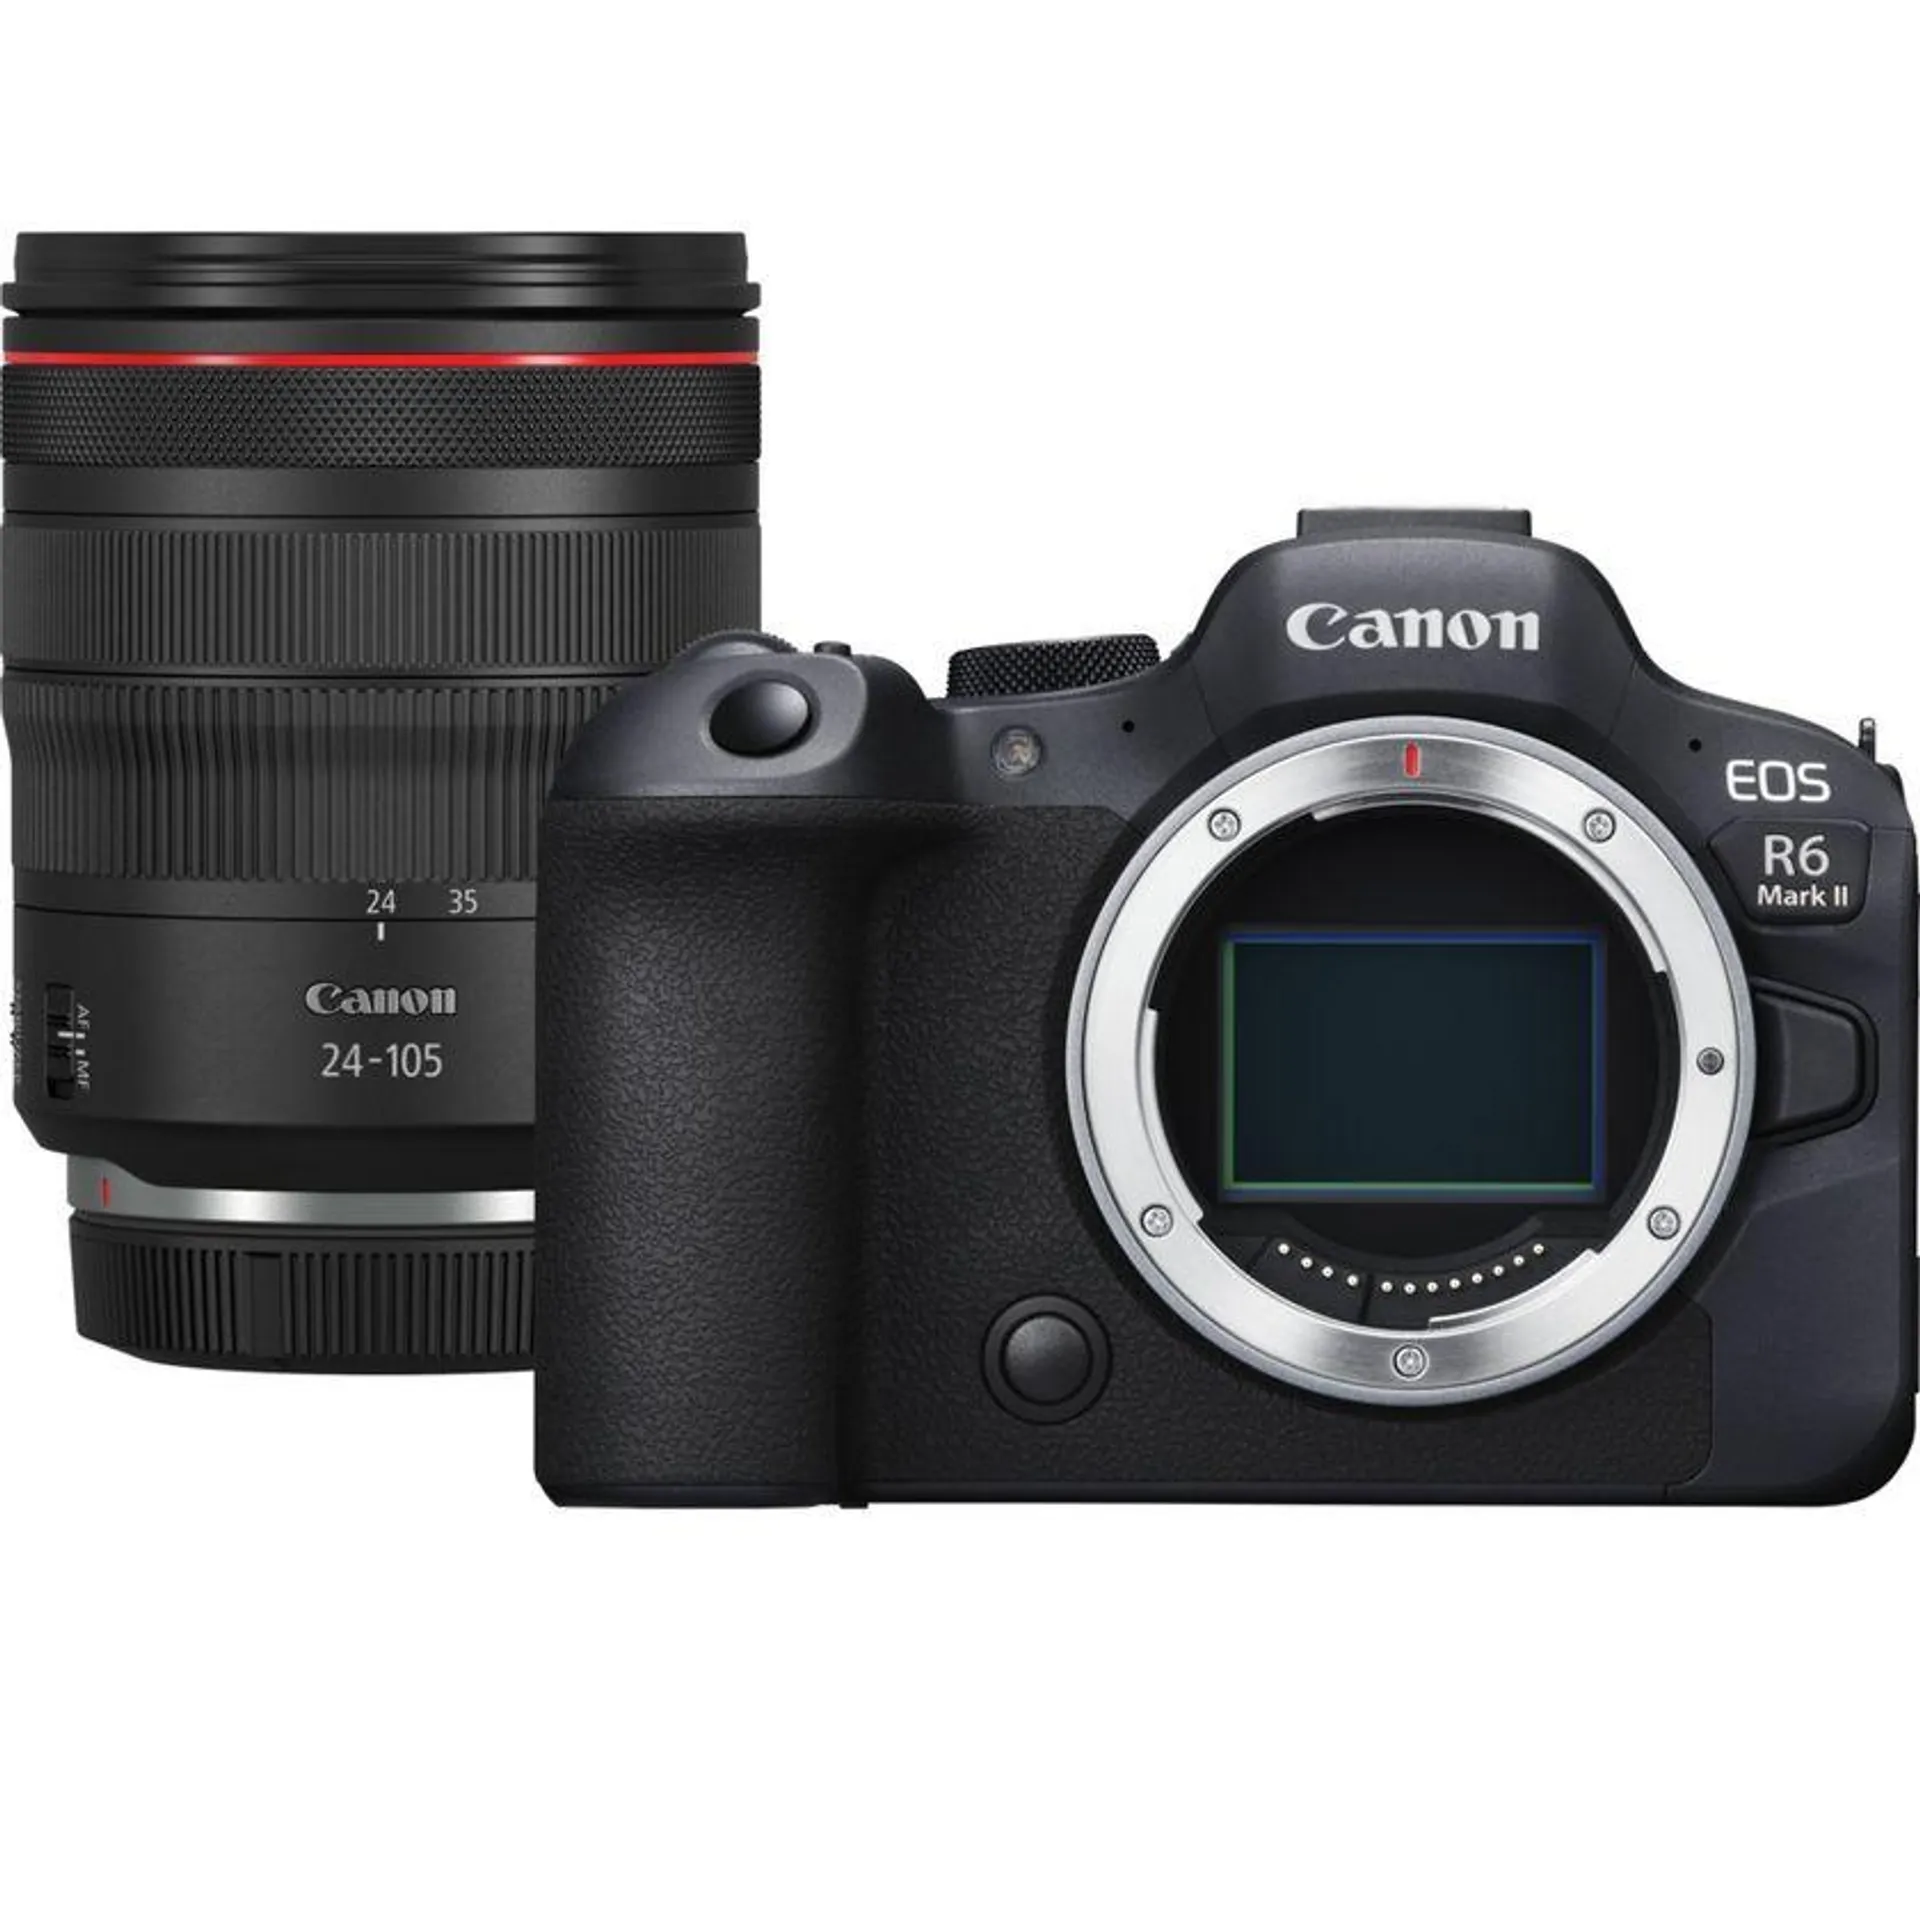 Cámara mirrorless Canon EOS R6 Mark II y objetivo RF 24-105mm F4L IS USM